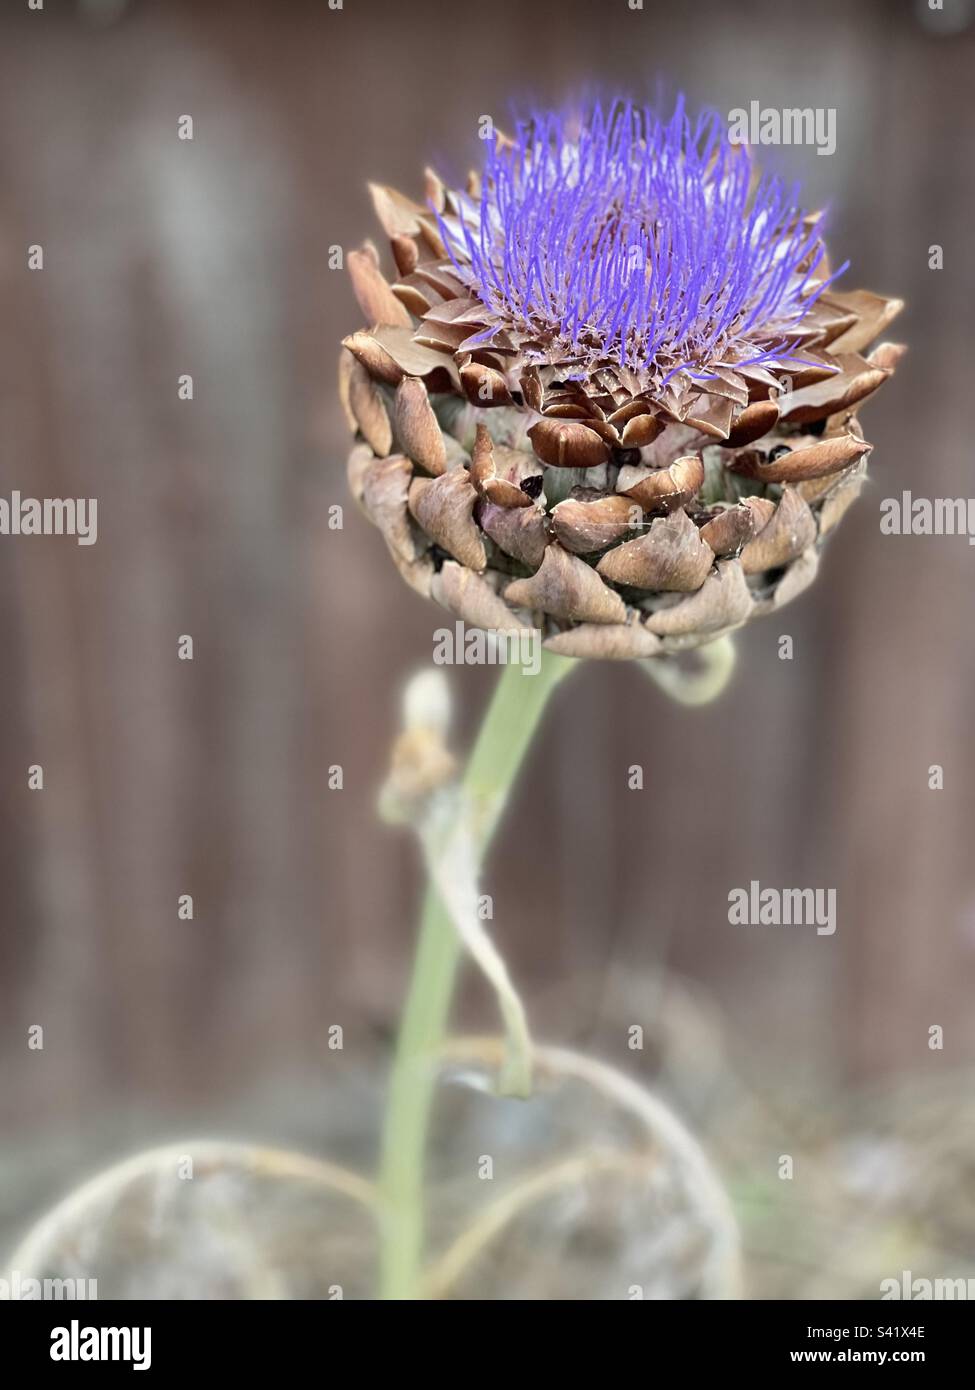 Artichoke flower portrait Stock Photo